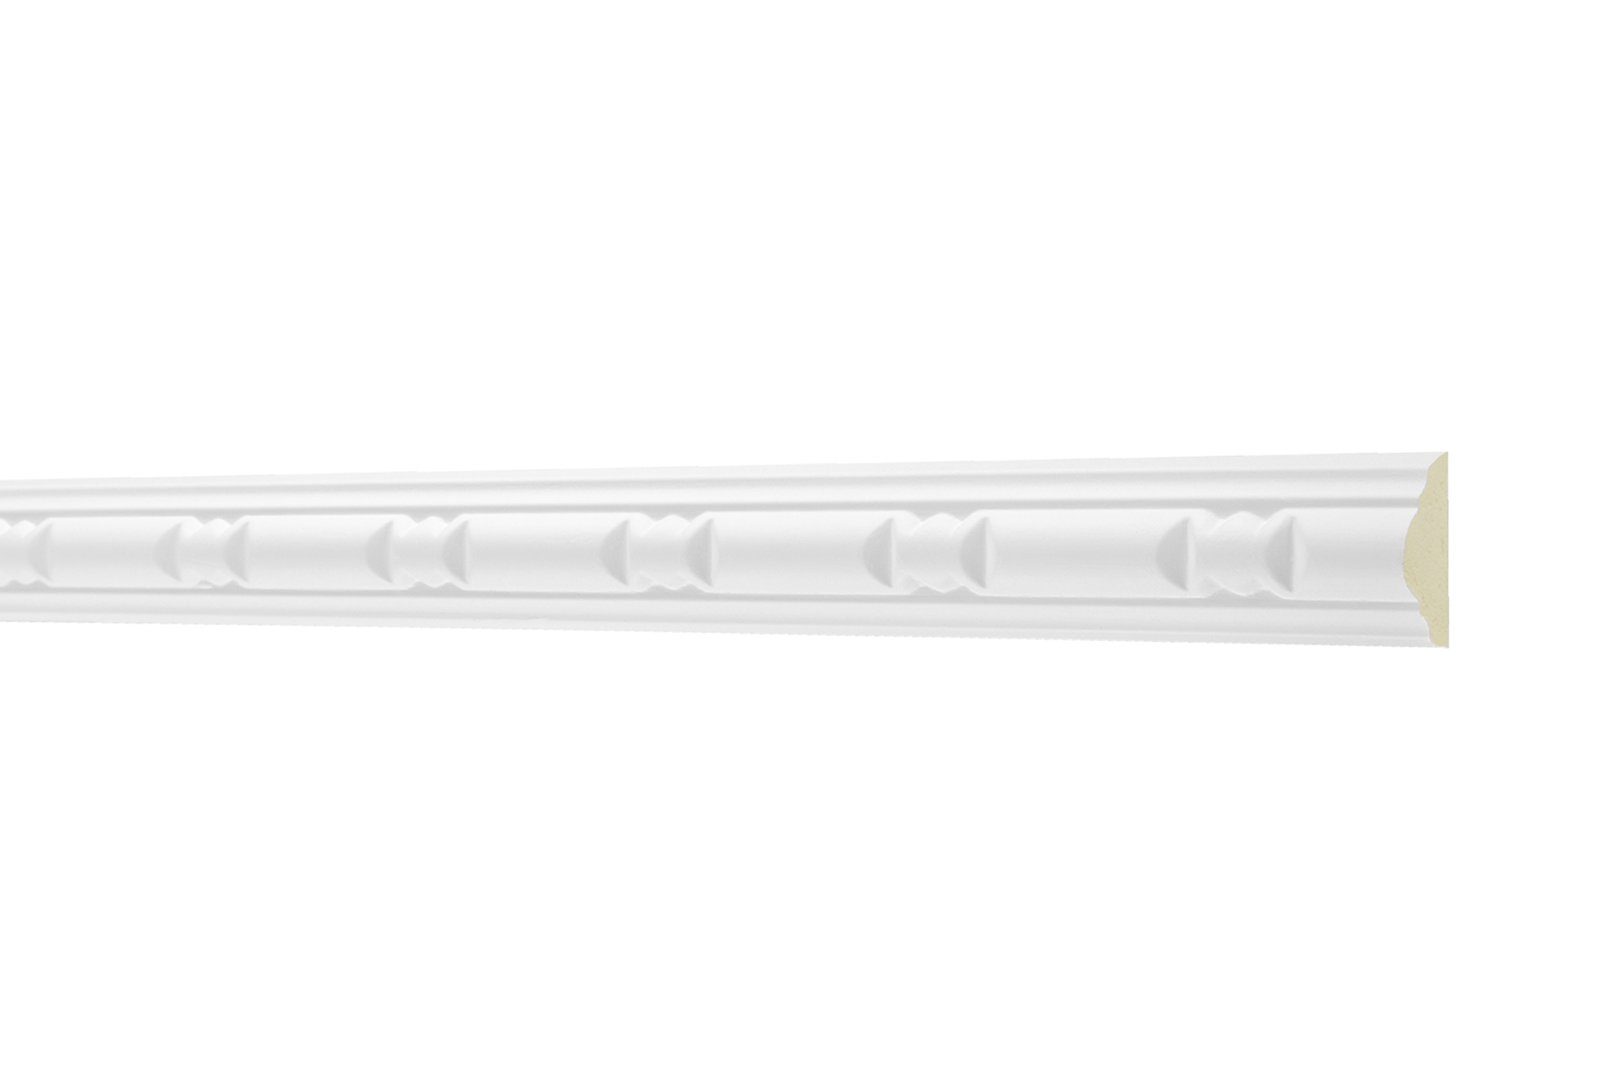 Hexim Perfect Stuckleiste AC 257, Flachprofile aus PU Serie 1 - Stuckprofil gemustert, weißes Zierprofil, hart & stoßfest - Wandleiste vorgrundiert